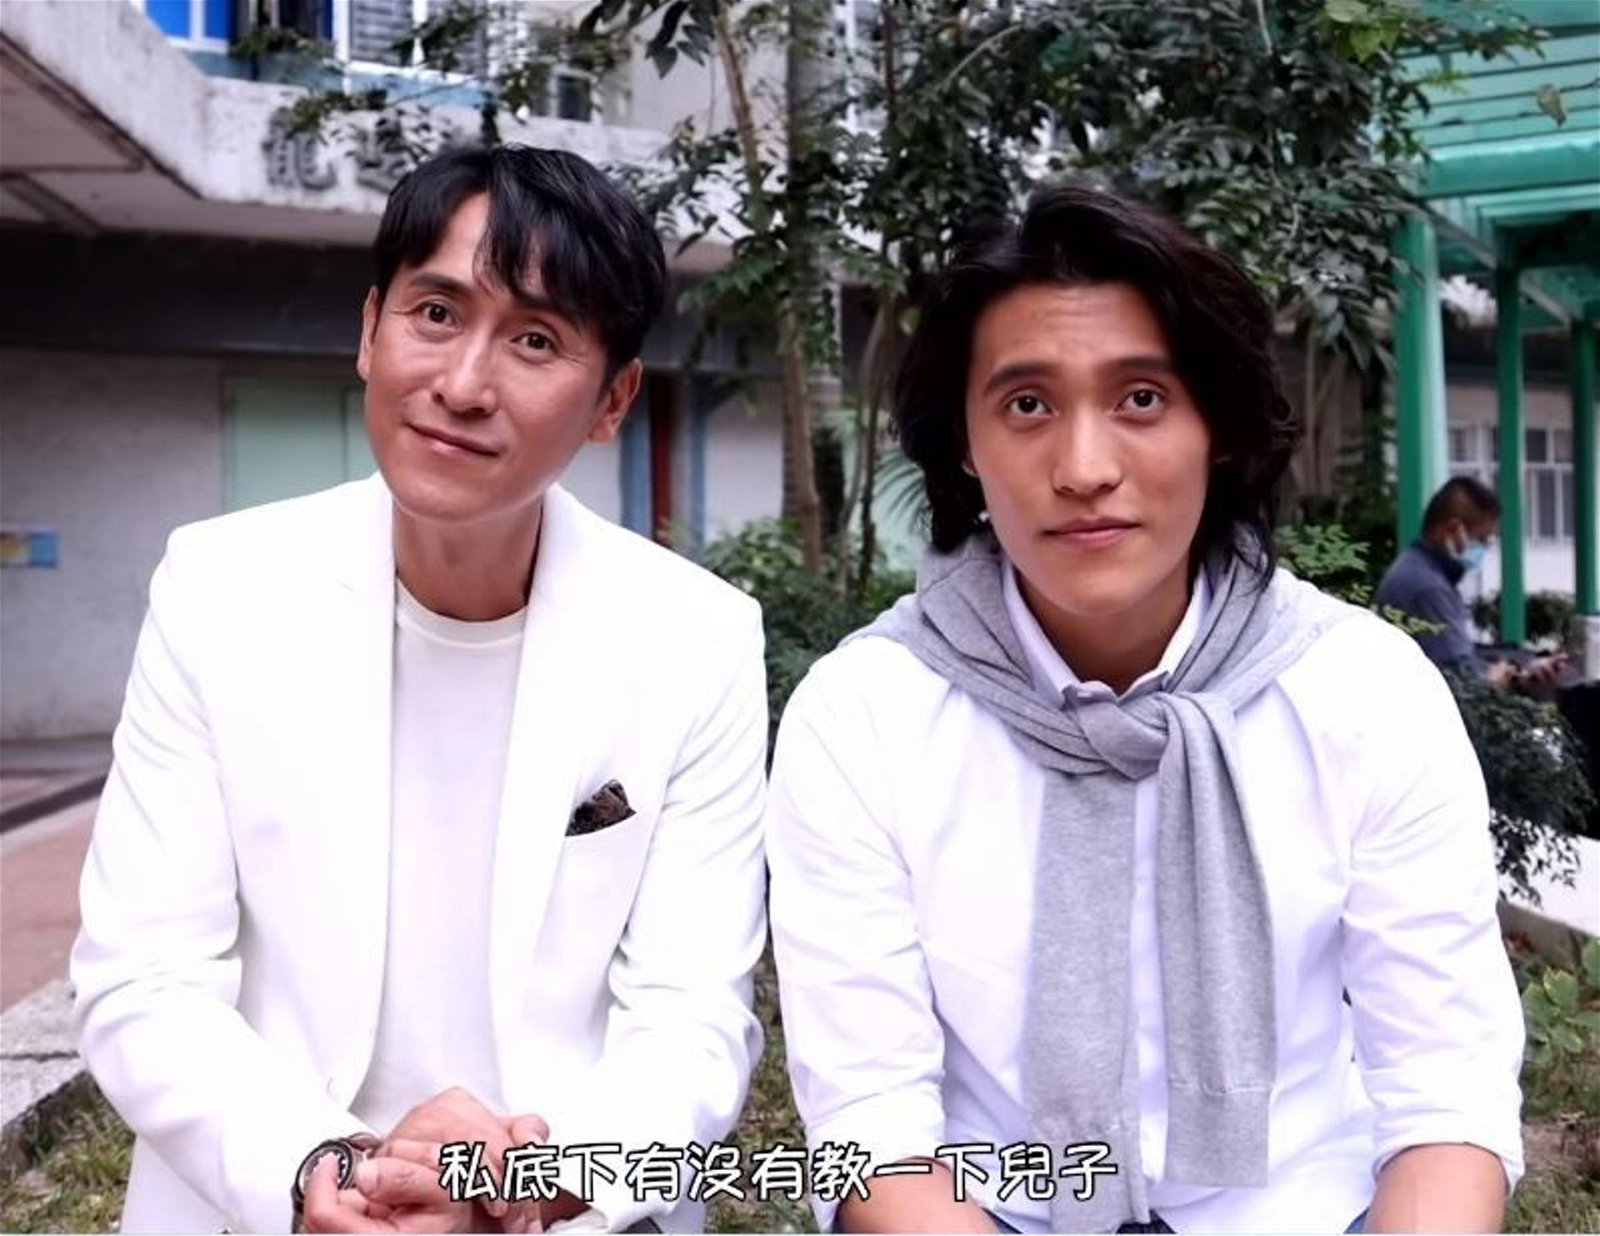 马在骧去年曾与父亲马德钟在在TVB剧集《我家无难事》中一起演出。